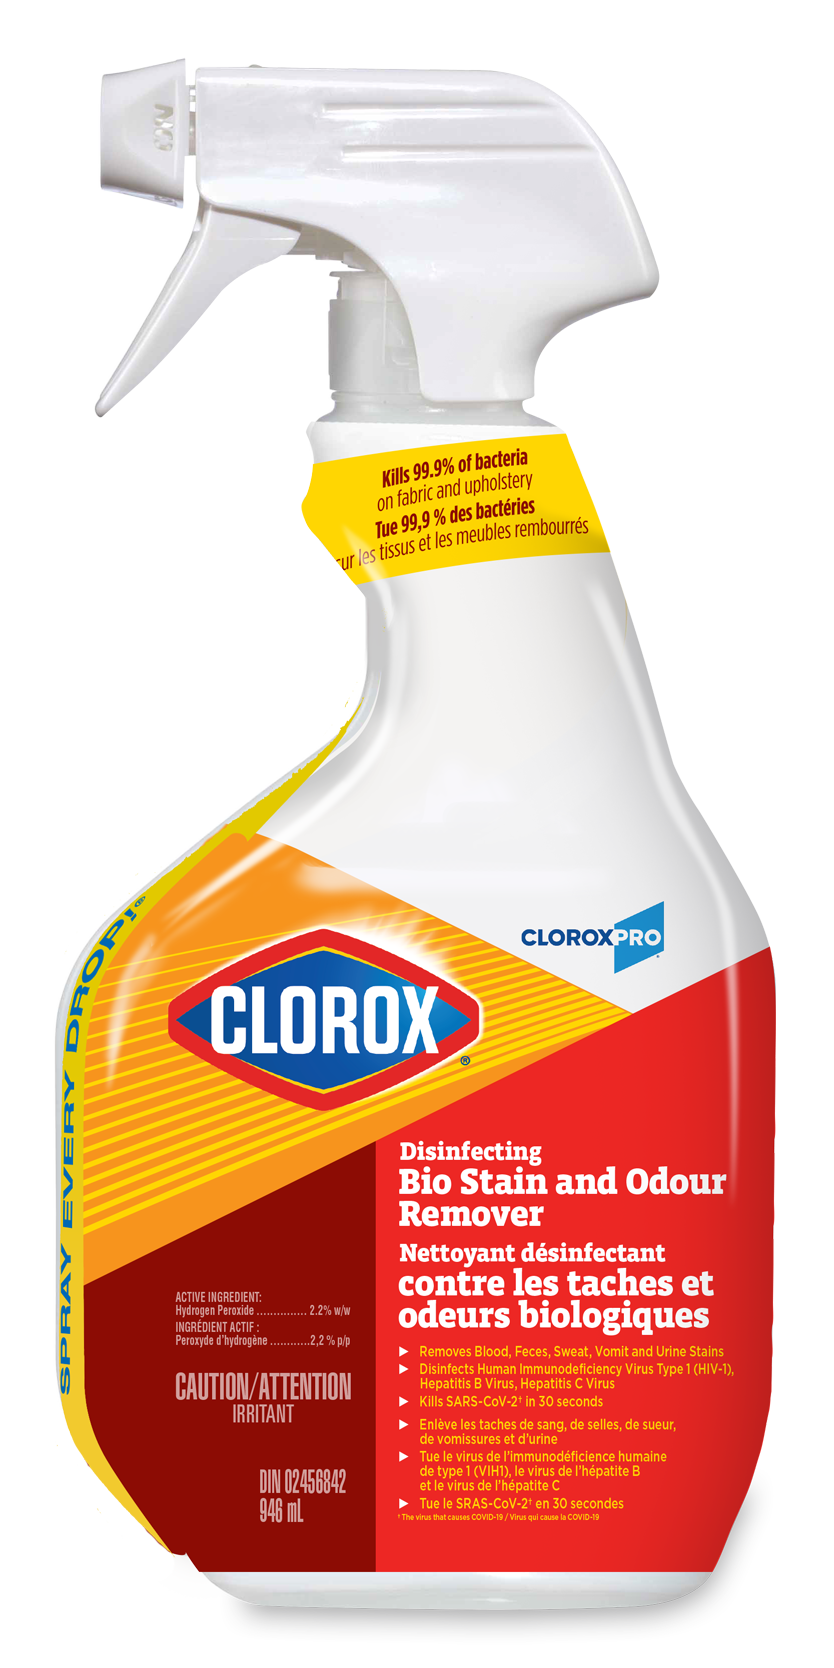 Nettoyant javel désinfectant Clorox Clean-Up en vaporisateur, 946 mL